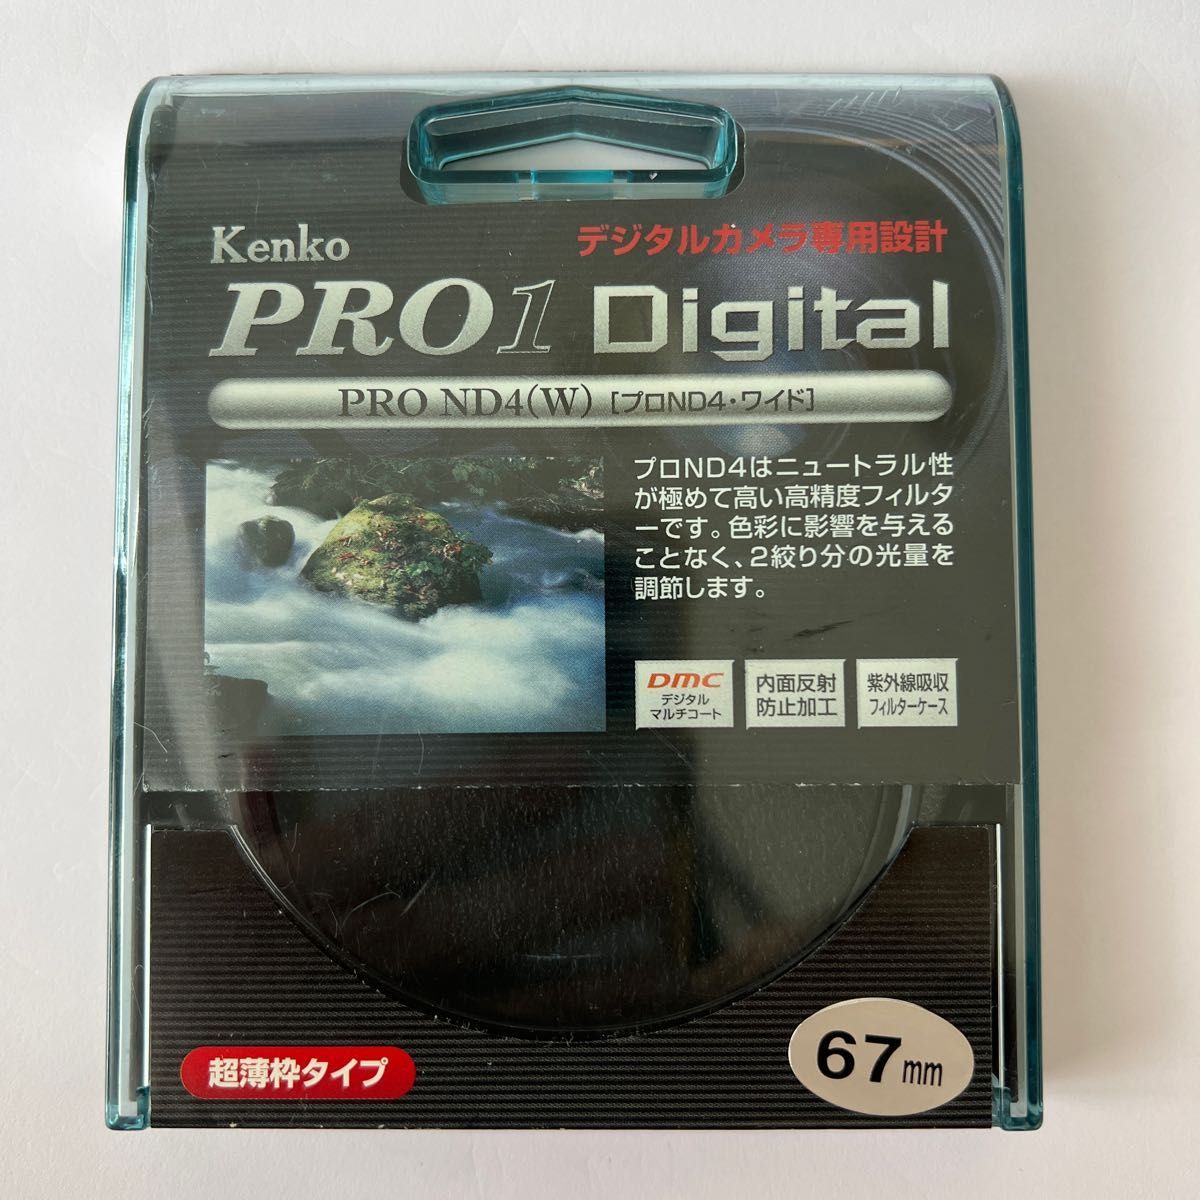 Kenko カメラ用フィルター PRO1D プロND4 (W) 67mm 光量調節用